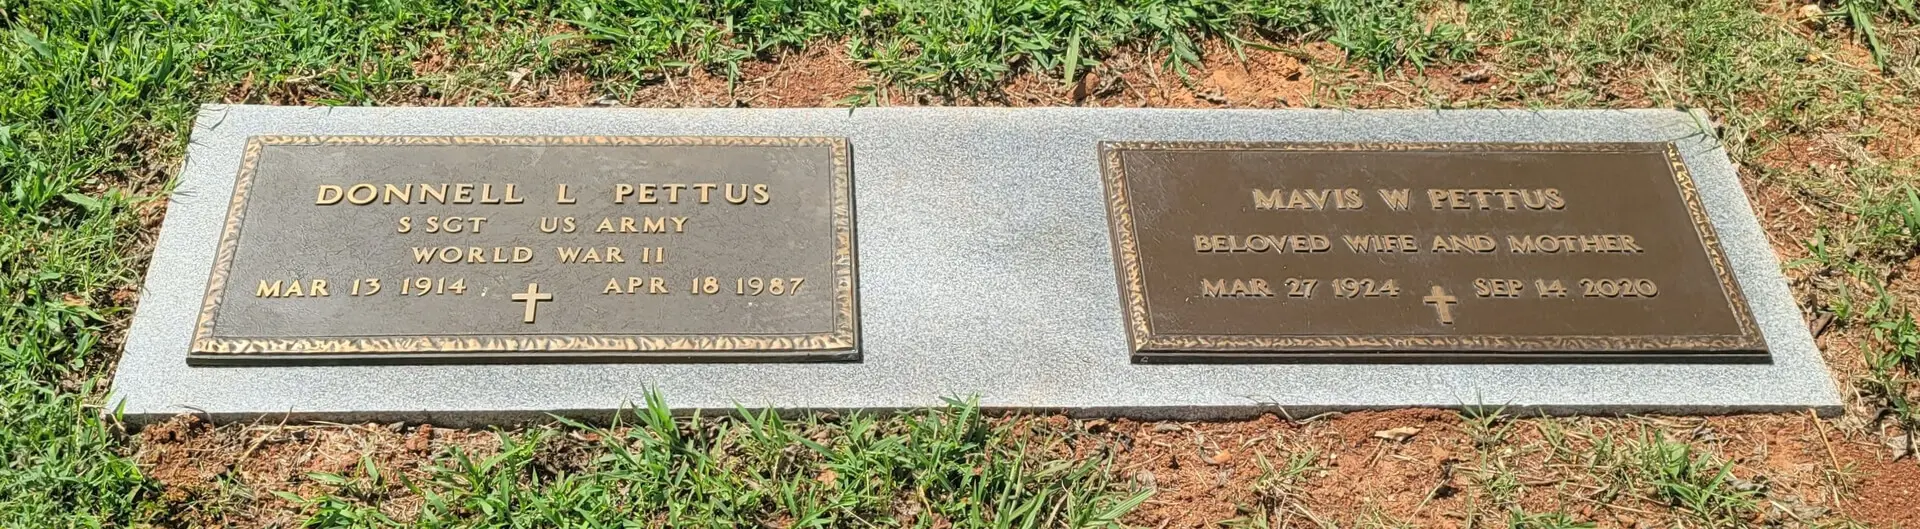 Donnell L Pettus and Mavis W Pettus Memorial Slab